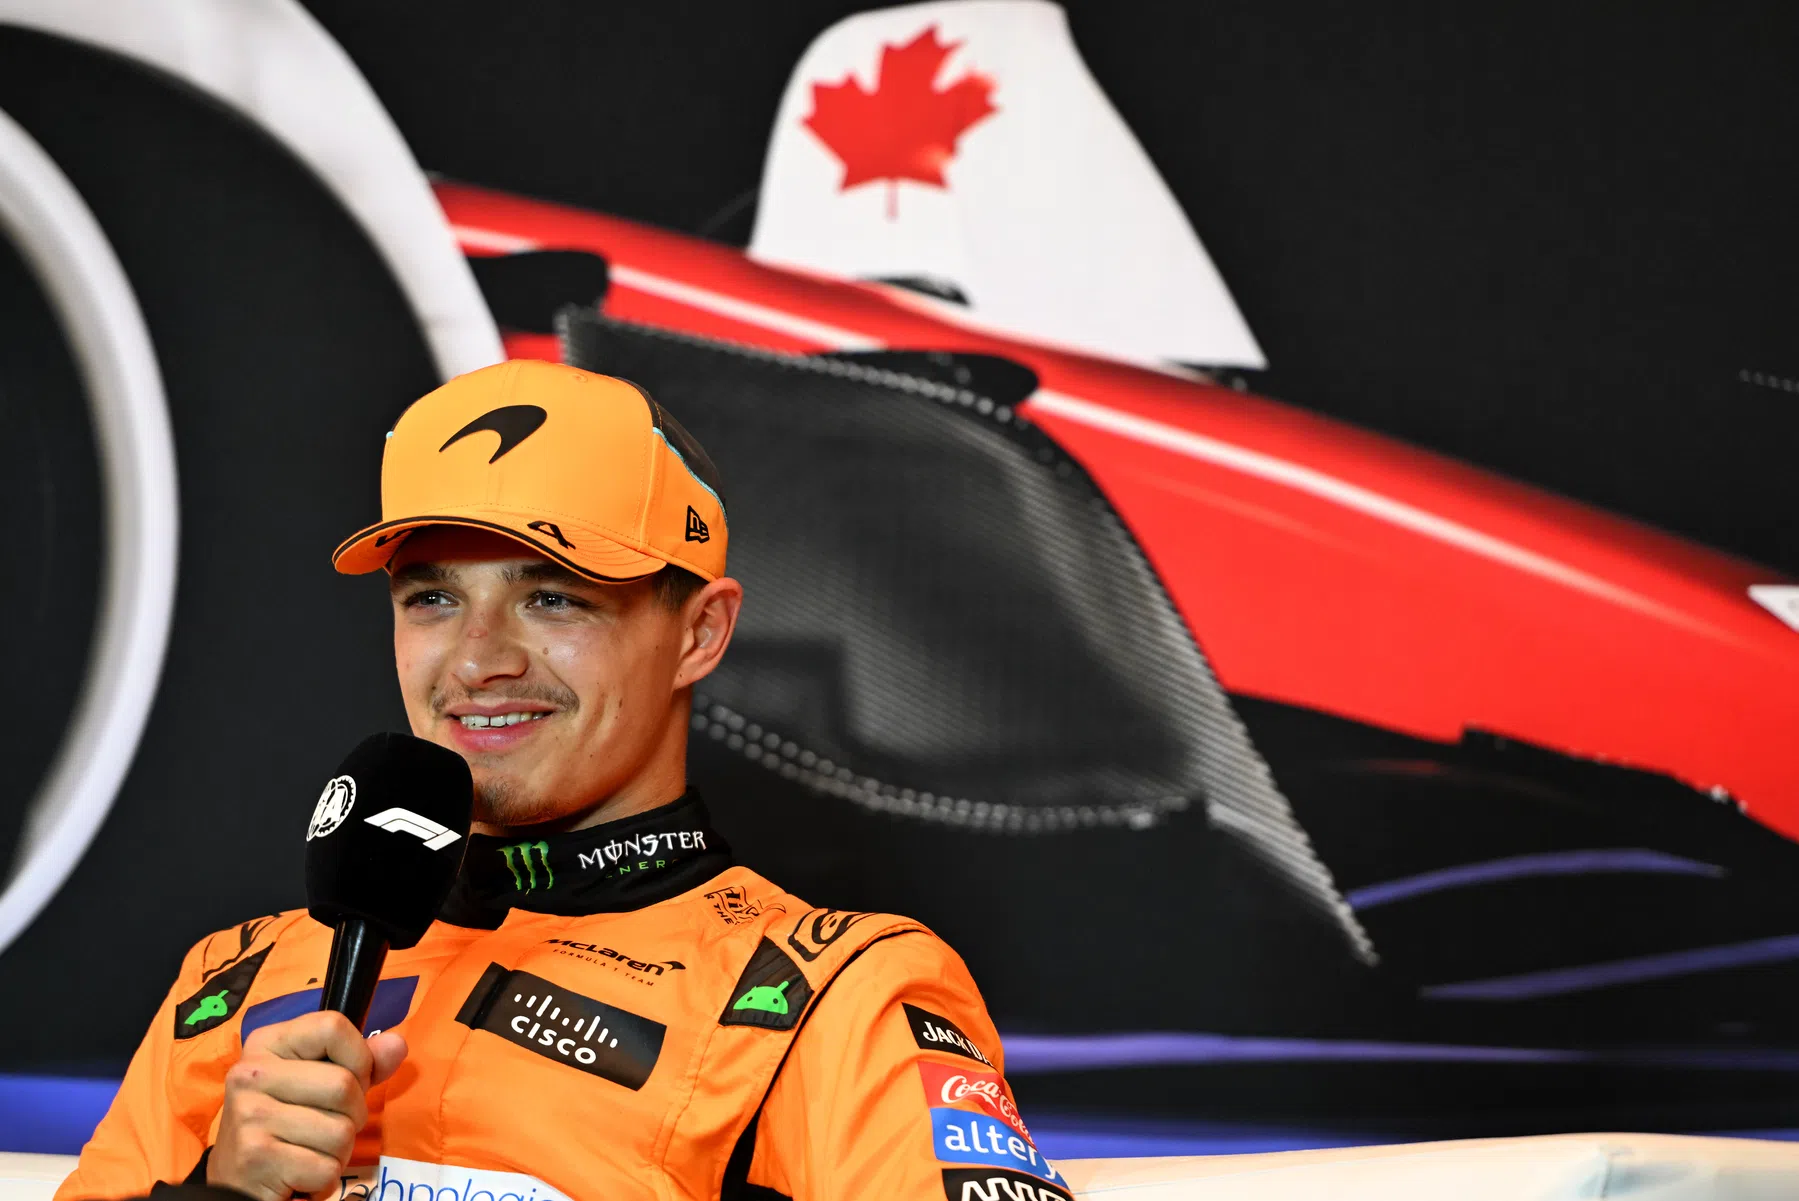 Norris empolgado com a McLaren no Grande Prêmio do Canadá